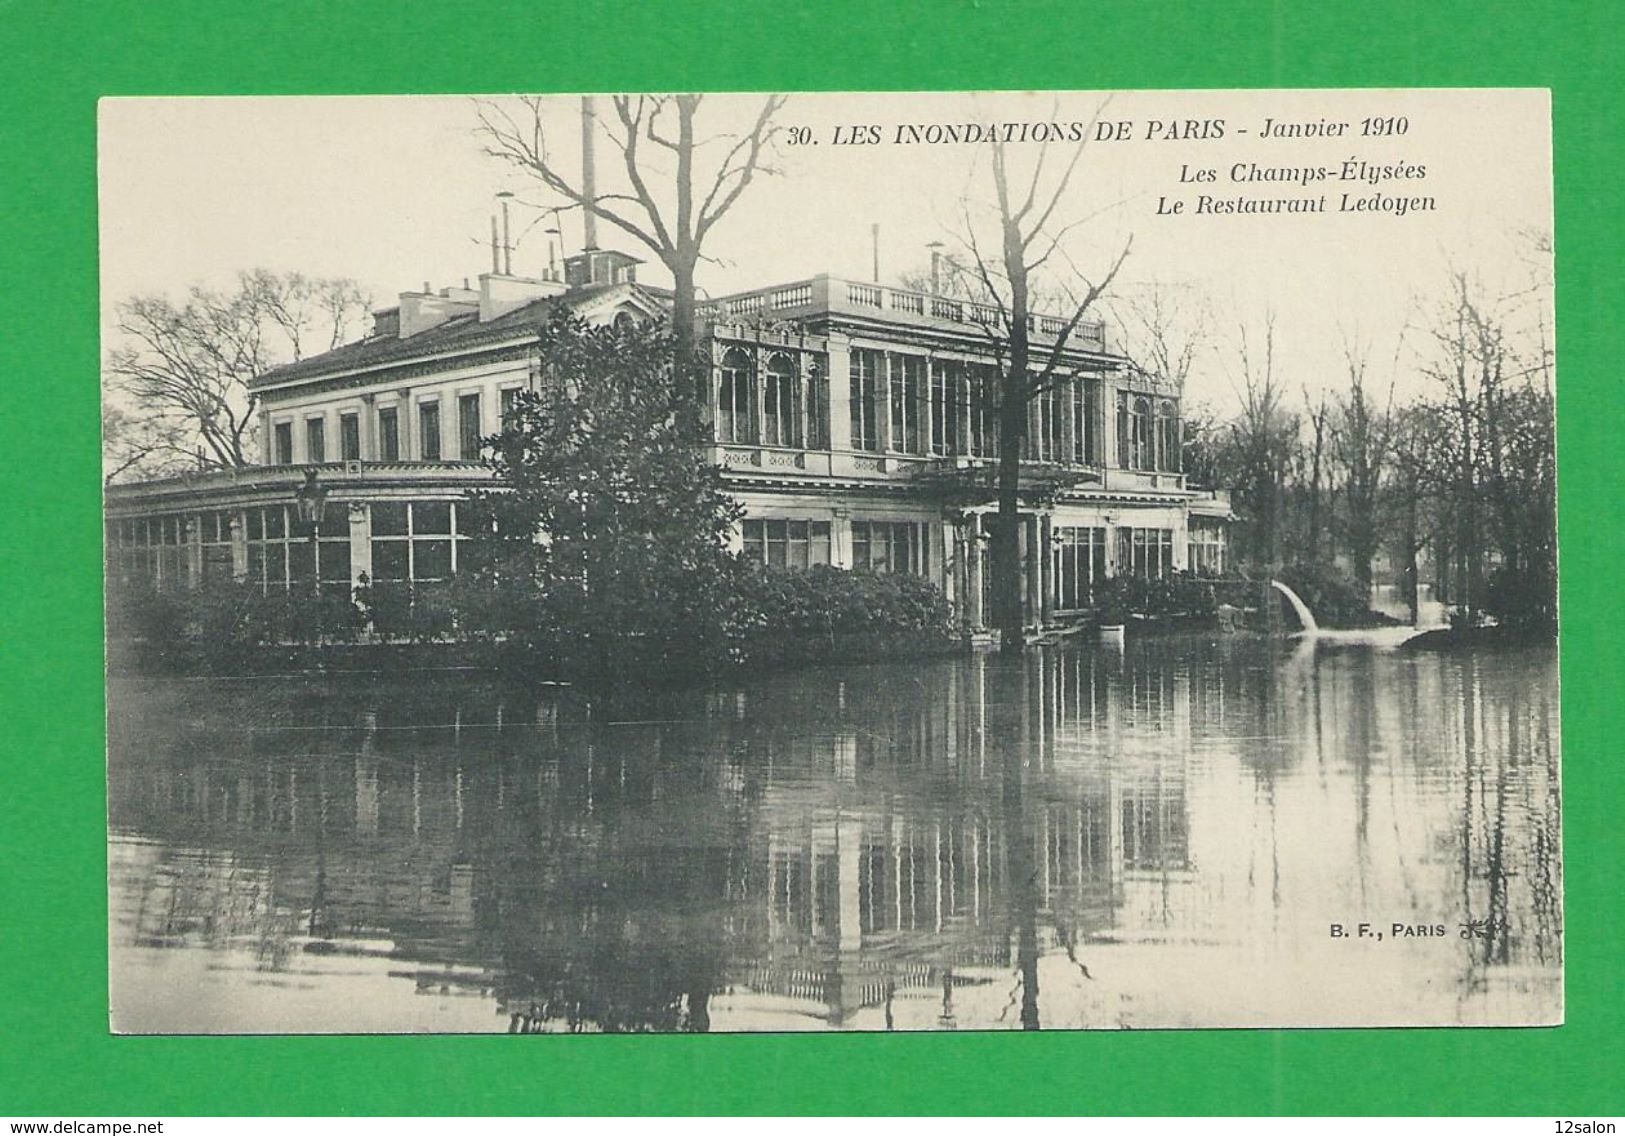 Cartes Postales 75 PARIS INONDATIONS DE 1910 Les Champs Elysées Restaurant Ledoyen - Überschwemmung 1910